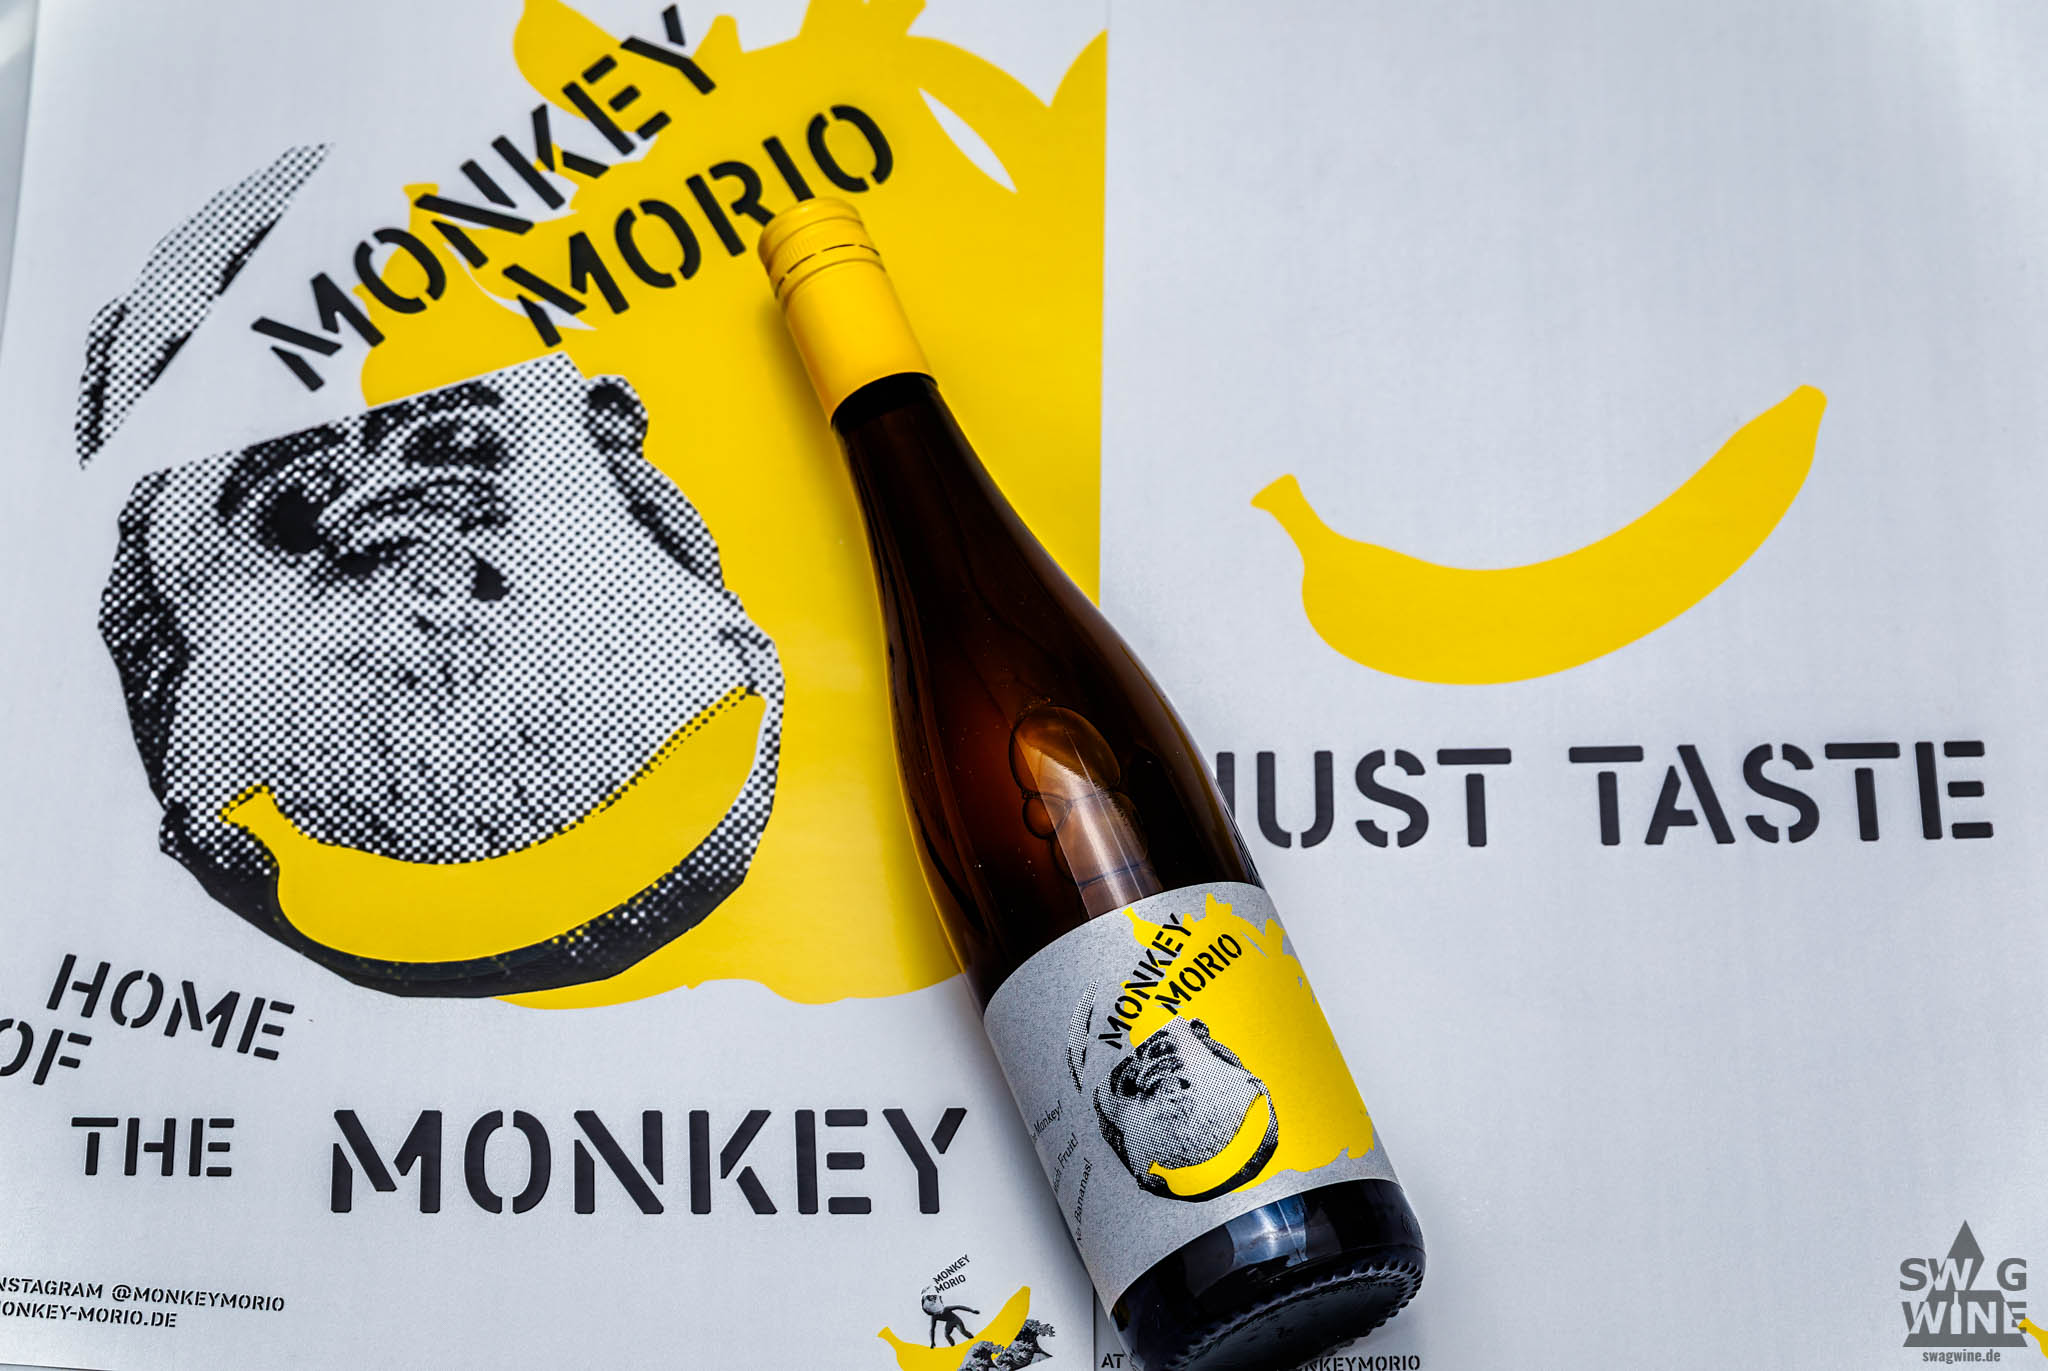 Monkey Morio No Bananas! Hanewald-Schwerdt Pfalz Wein Swagwine